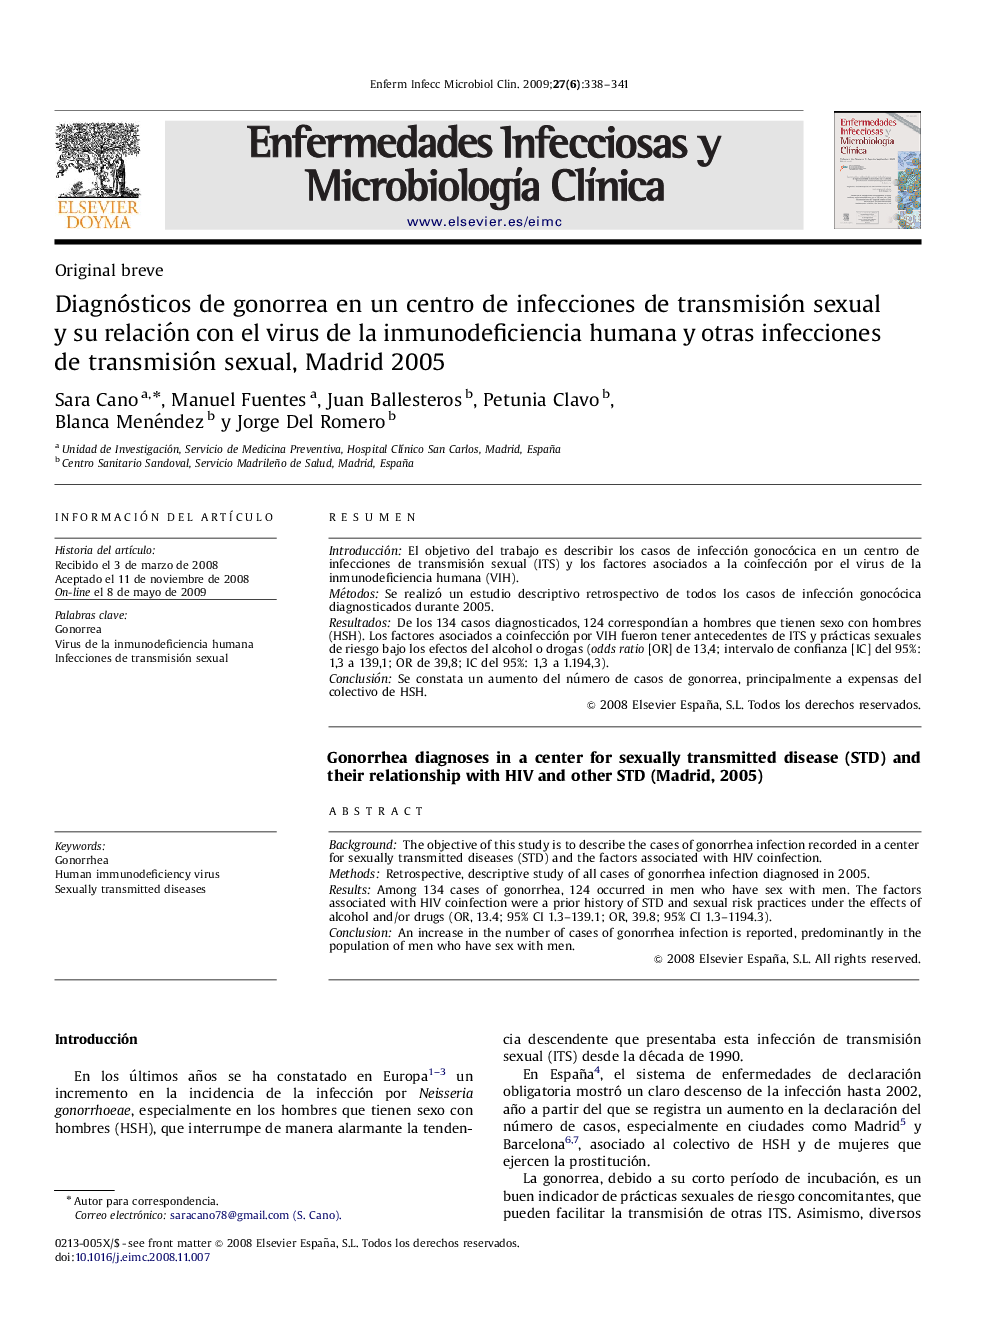 Diagnósticos de gonorrea en un centro de infecciones de transmisión sexual y su relación con el virus de la inmunodeficiencia humana y otras infecciones de transmisión sexual, Madrid 2005